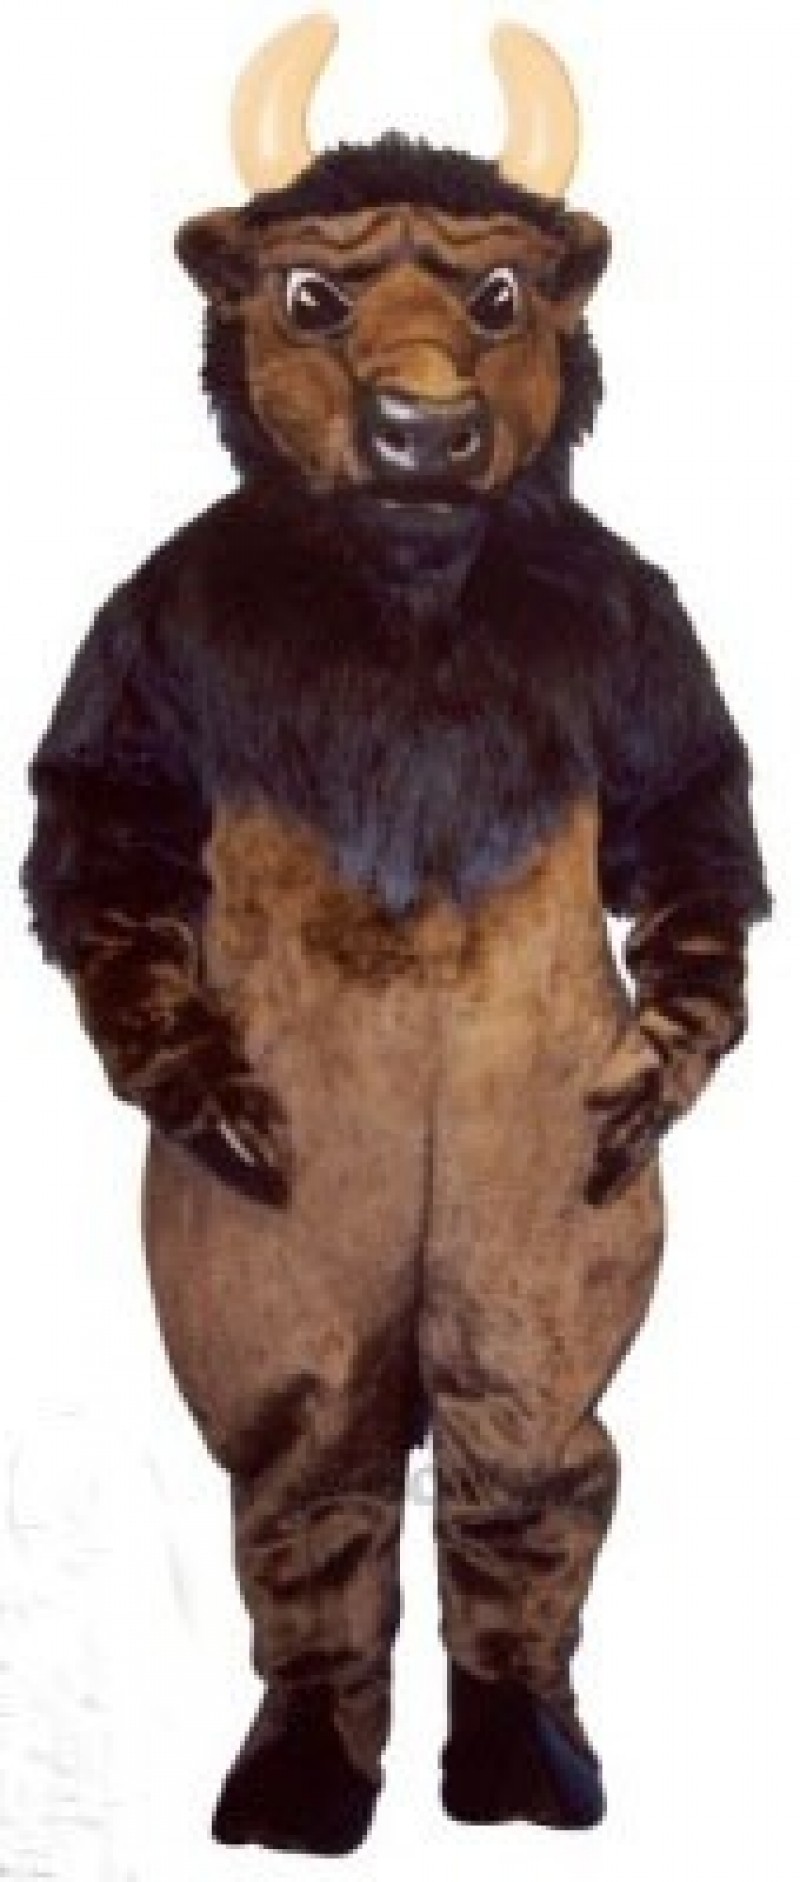 Buddy Buffalo Mascot Costume